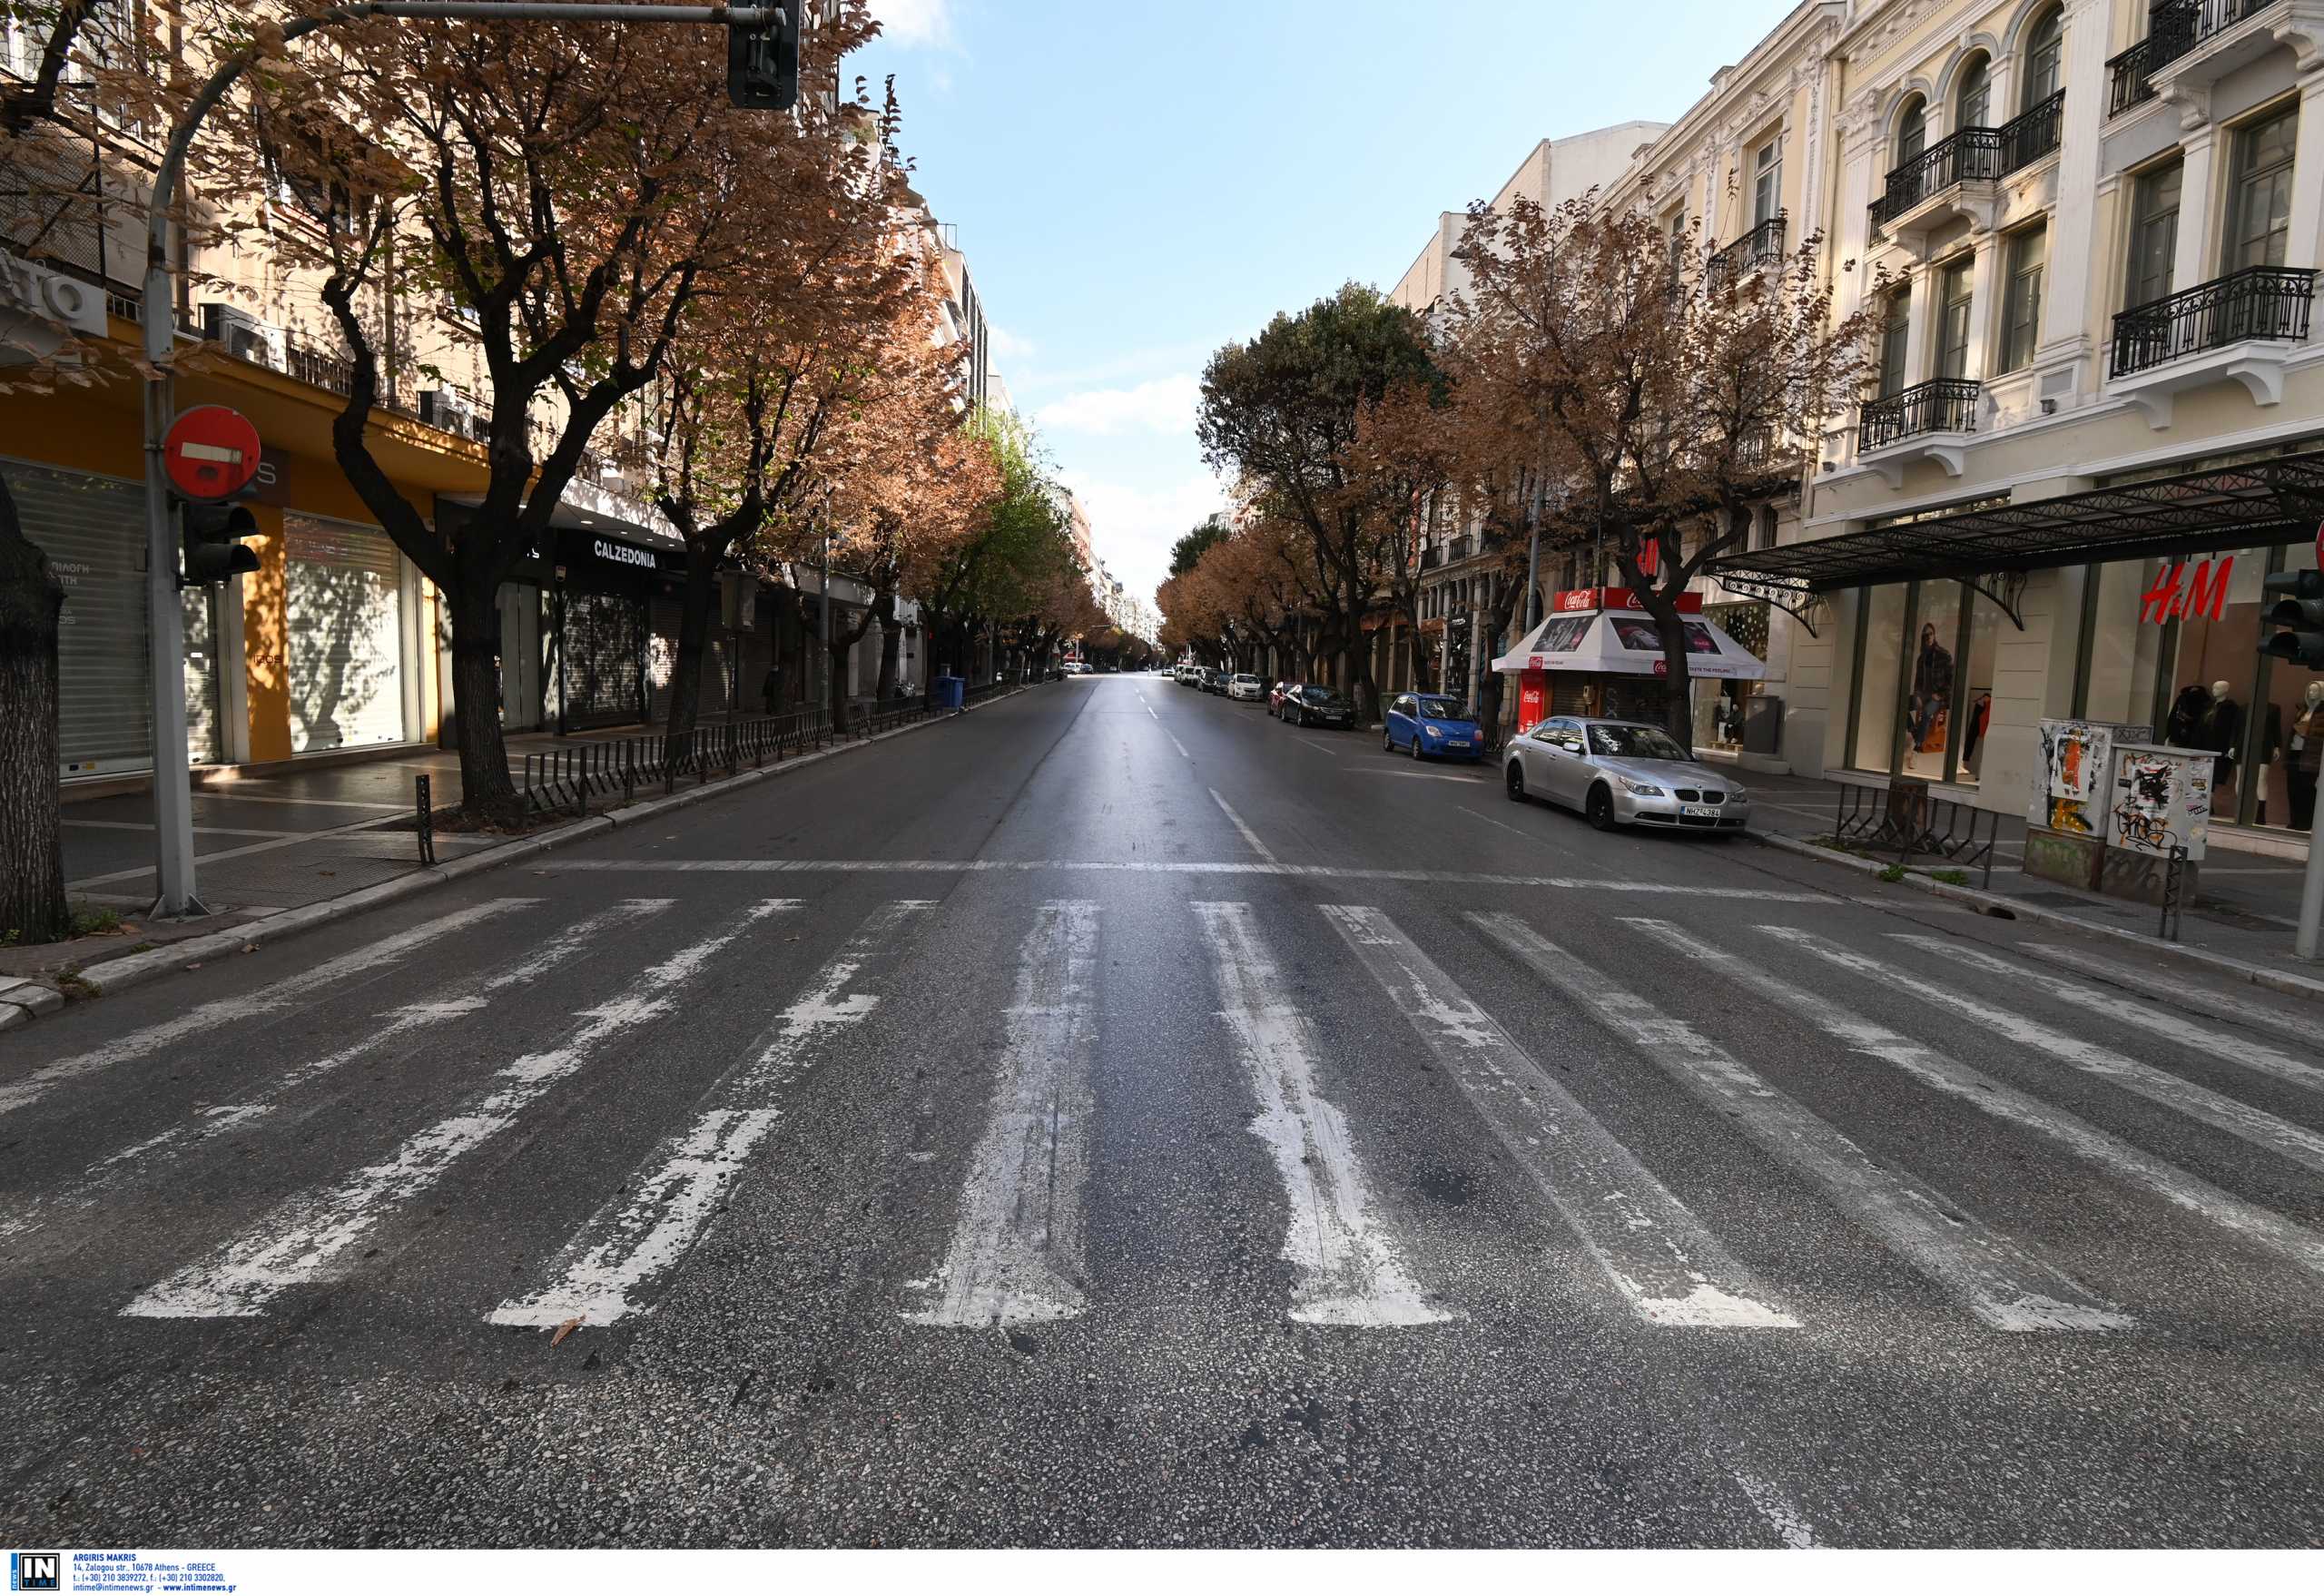 Θεσσαλονίκη: Μετακομίζουν από το κέντρο στα προάστια για να γλιτώσουν από την πανδημία